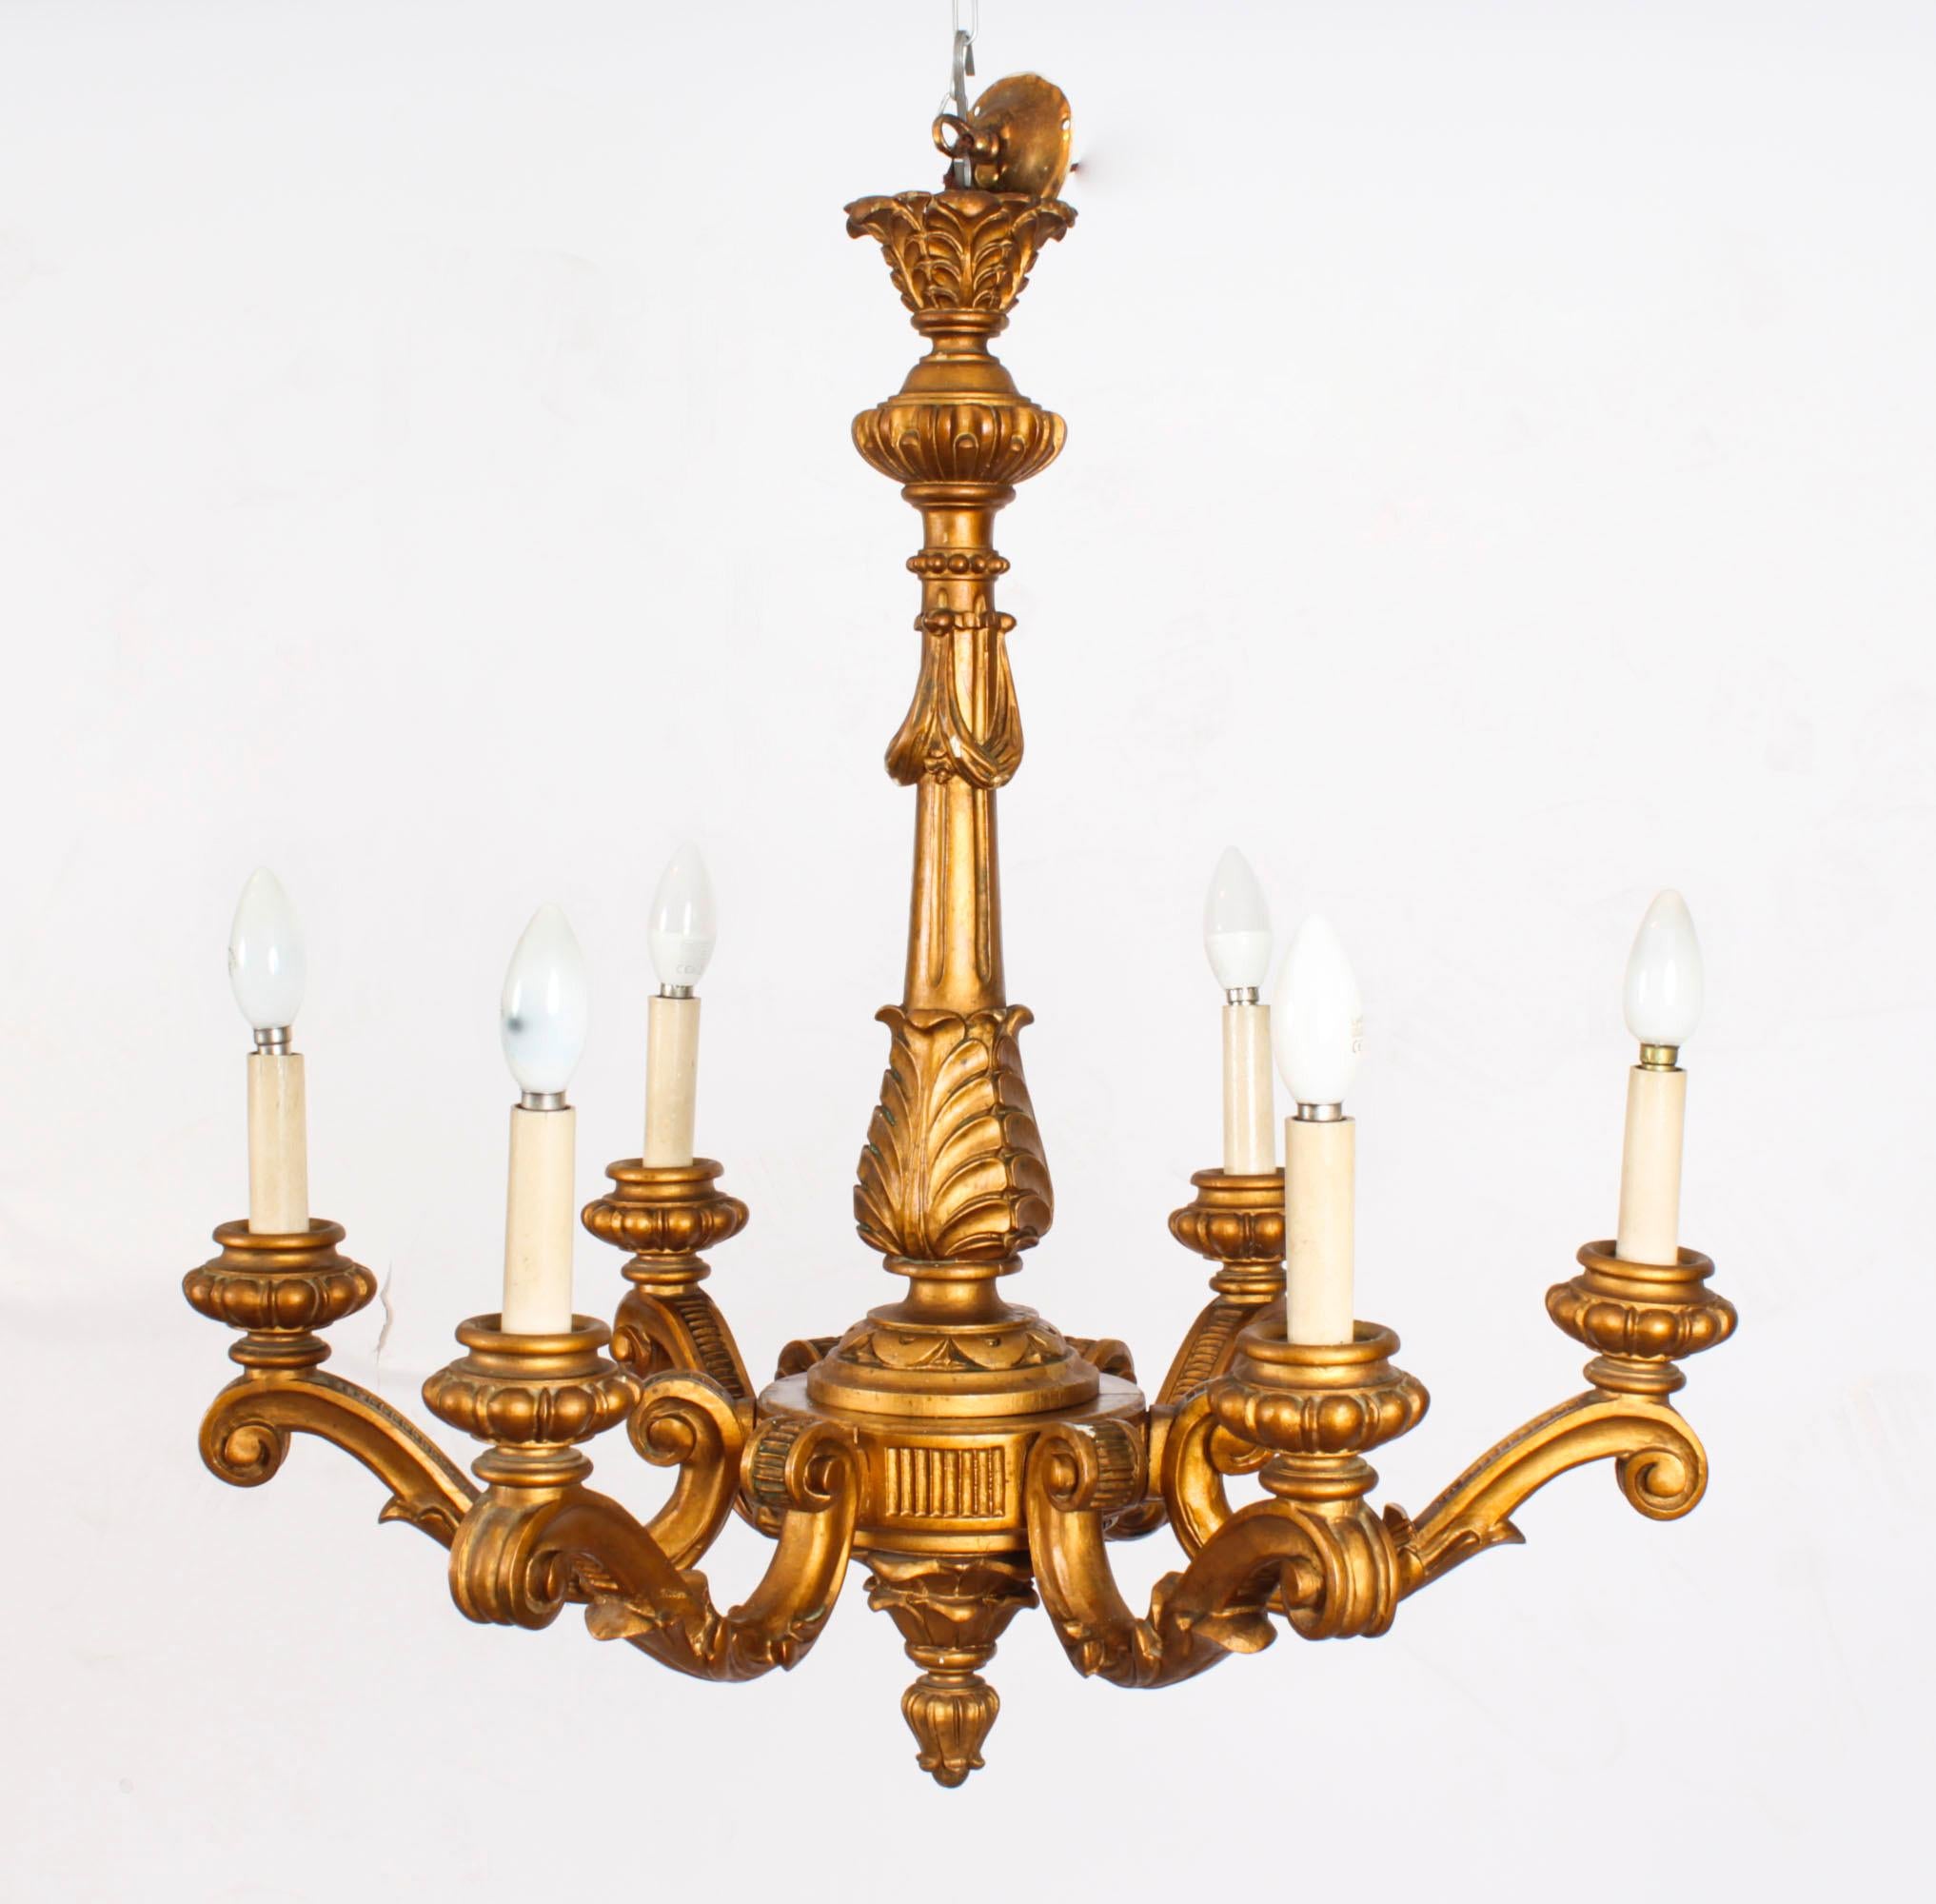 Il s'agit d'une magnifique paire de lustres italiens anciens en bois doré à six lumières, datant d'environ 1920.

Chaque lustre en bois doré à six branches est sculpté de manière élaborée dans le style rococo.

Ces chandeleirs seront également